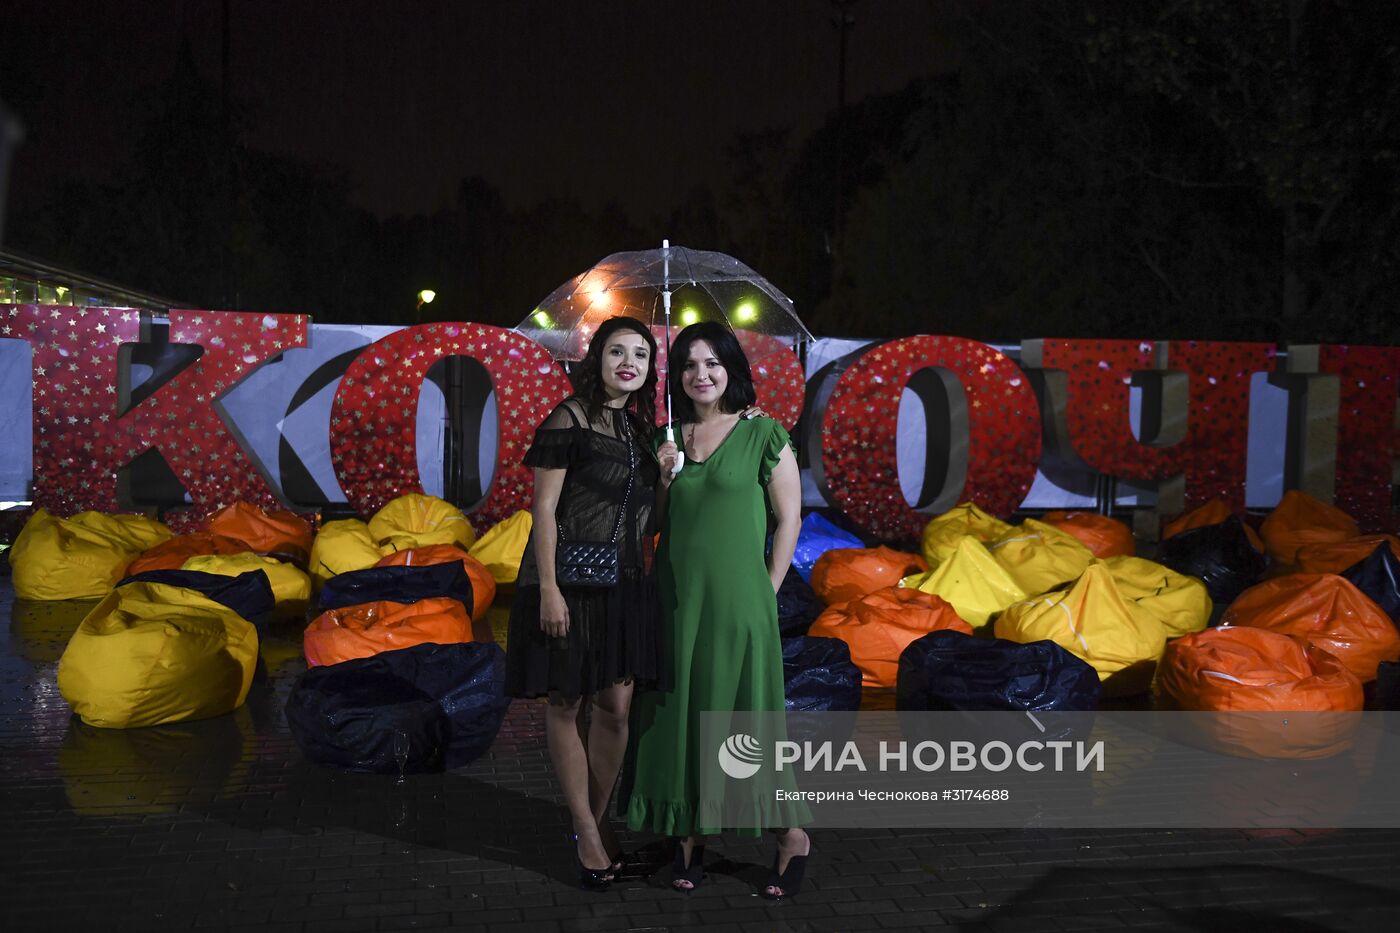 Закрытие фестиваля "Короче" в Калининграде